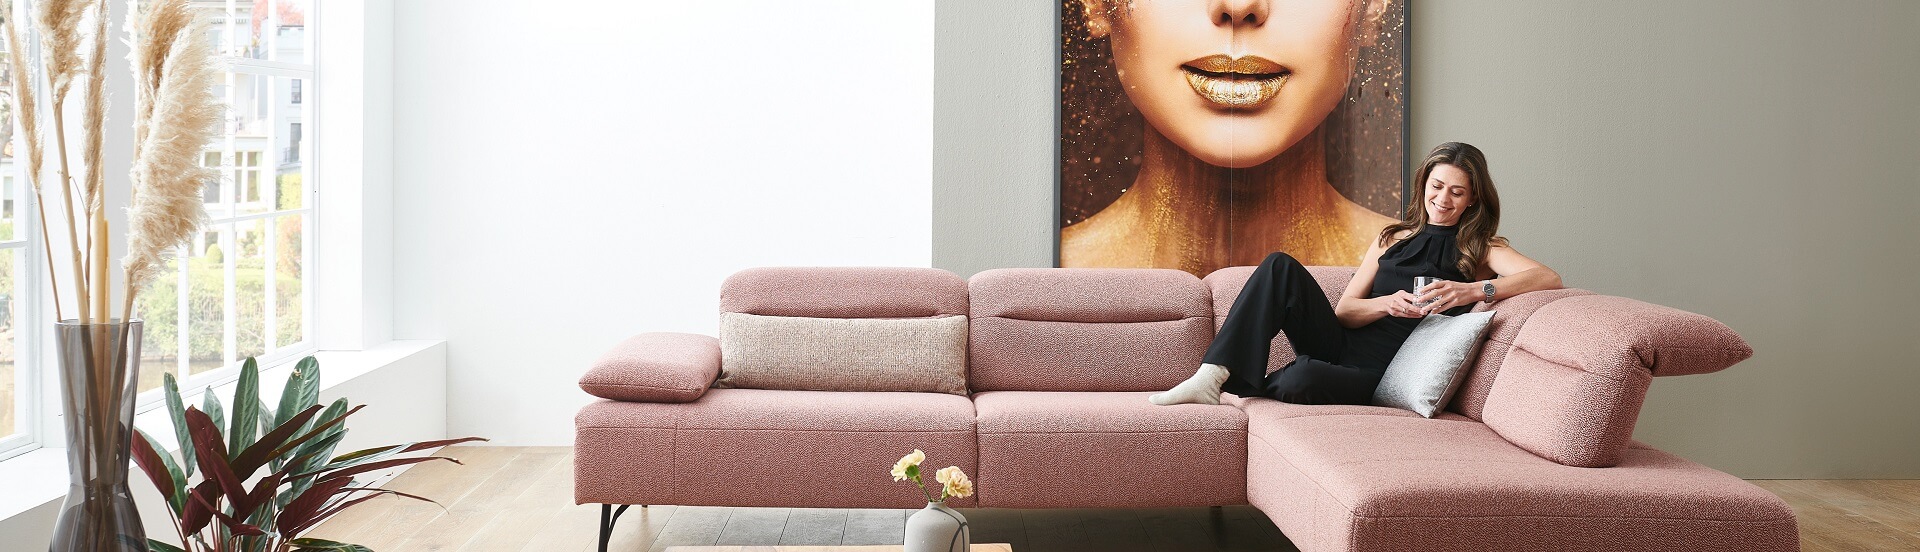 GUNST Blog "Zeit für Komfort" - eine Frau sitzt langestreckt auf einem roséfarbenen Sofa, hat einen Arm an die Rückenlehnen angelehnt und blickt in ihr Mobiltelefon.